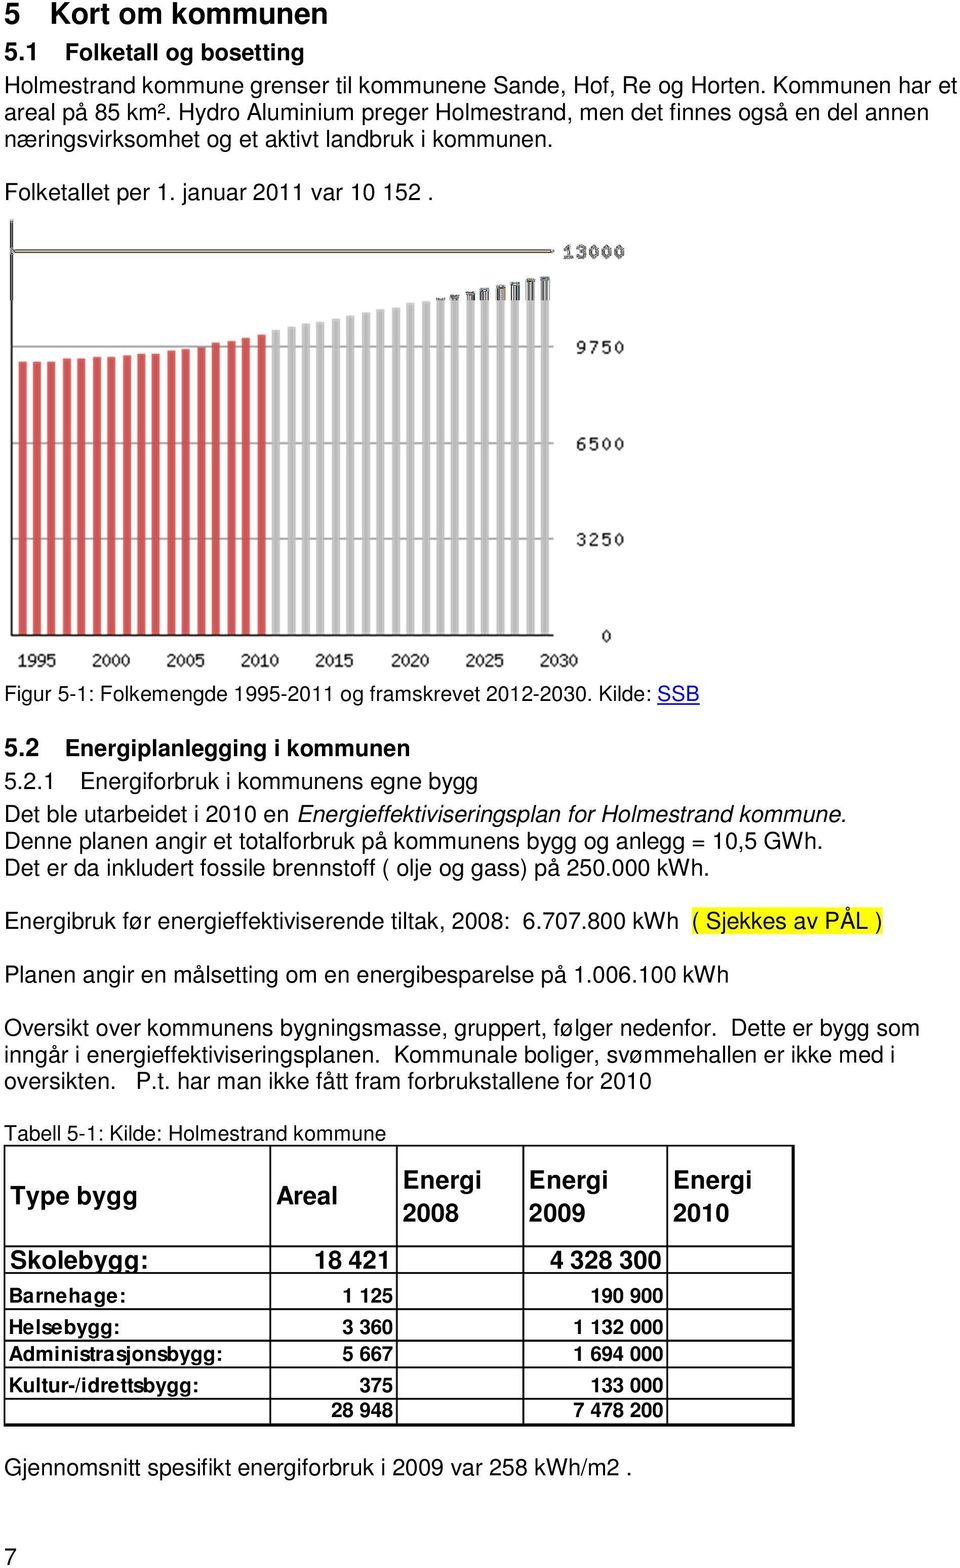 Figur 5-1: Folkemengde 1995-2011 og framskrevet 2012-2030. Kilde: SSB 5.2 Energiplanlegging i kommunen 5.2.1 Energiforbruk i kommunens egne bygg Det ble utarbeidet i 2010 en Energieffektiviseringsplan for Holmestrand kommune.